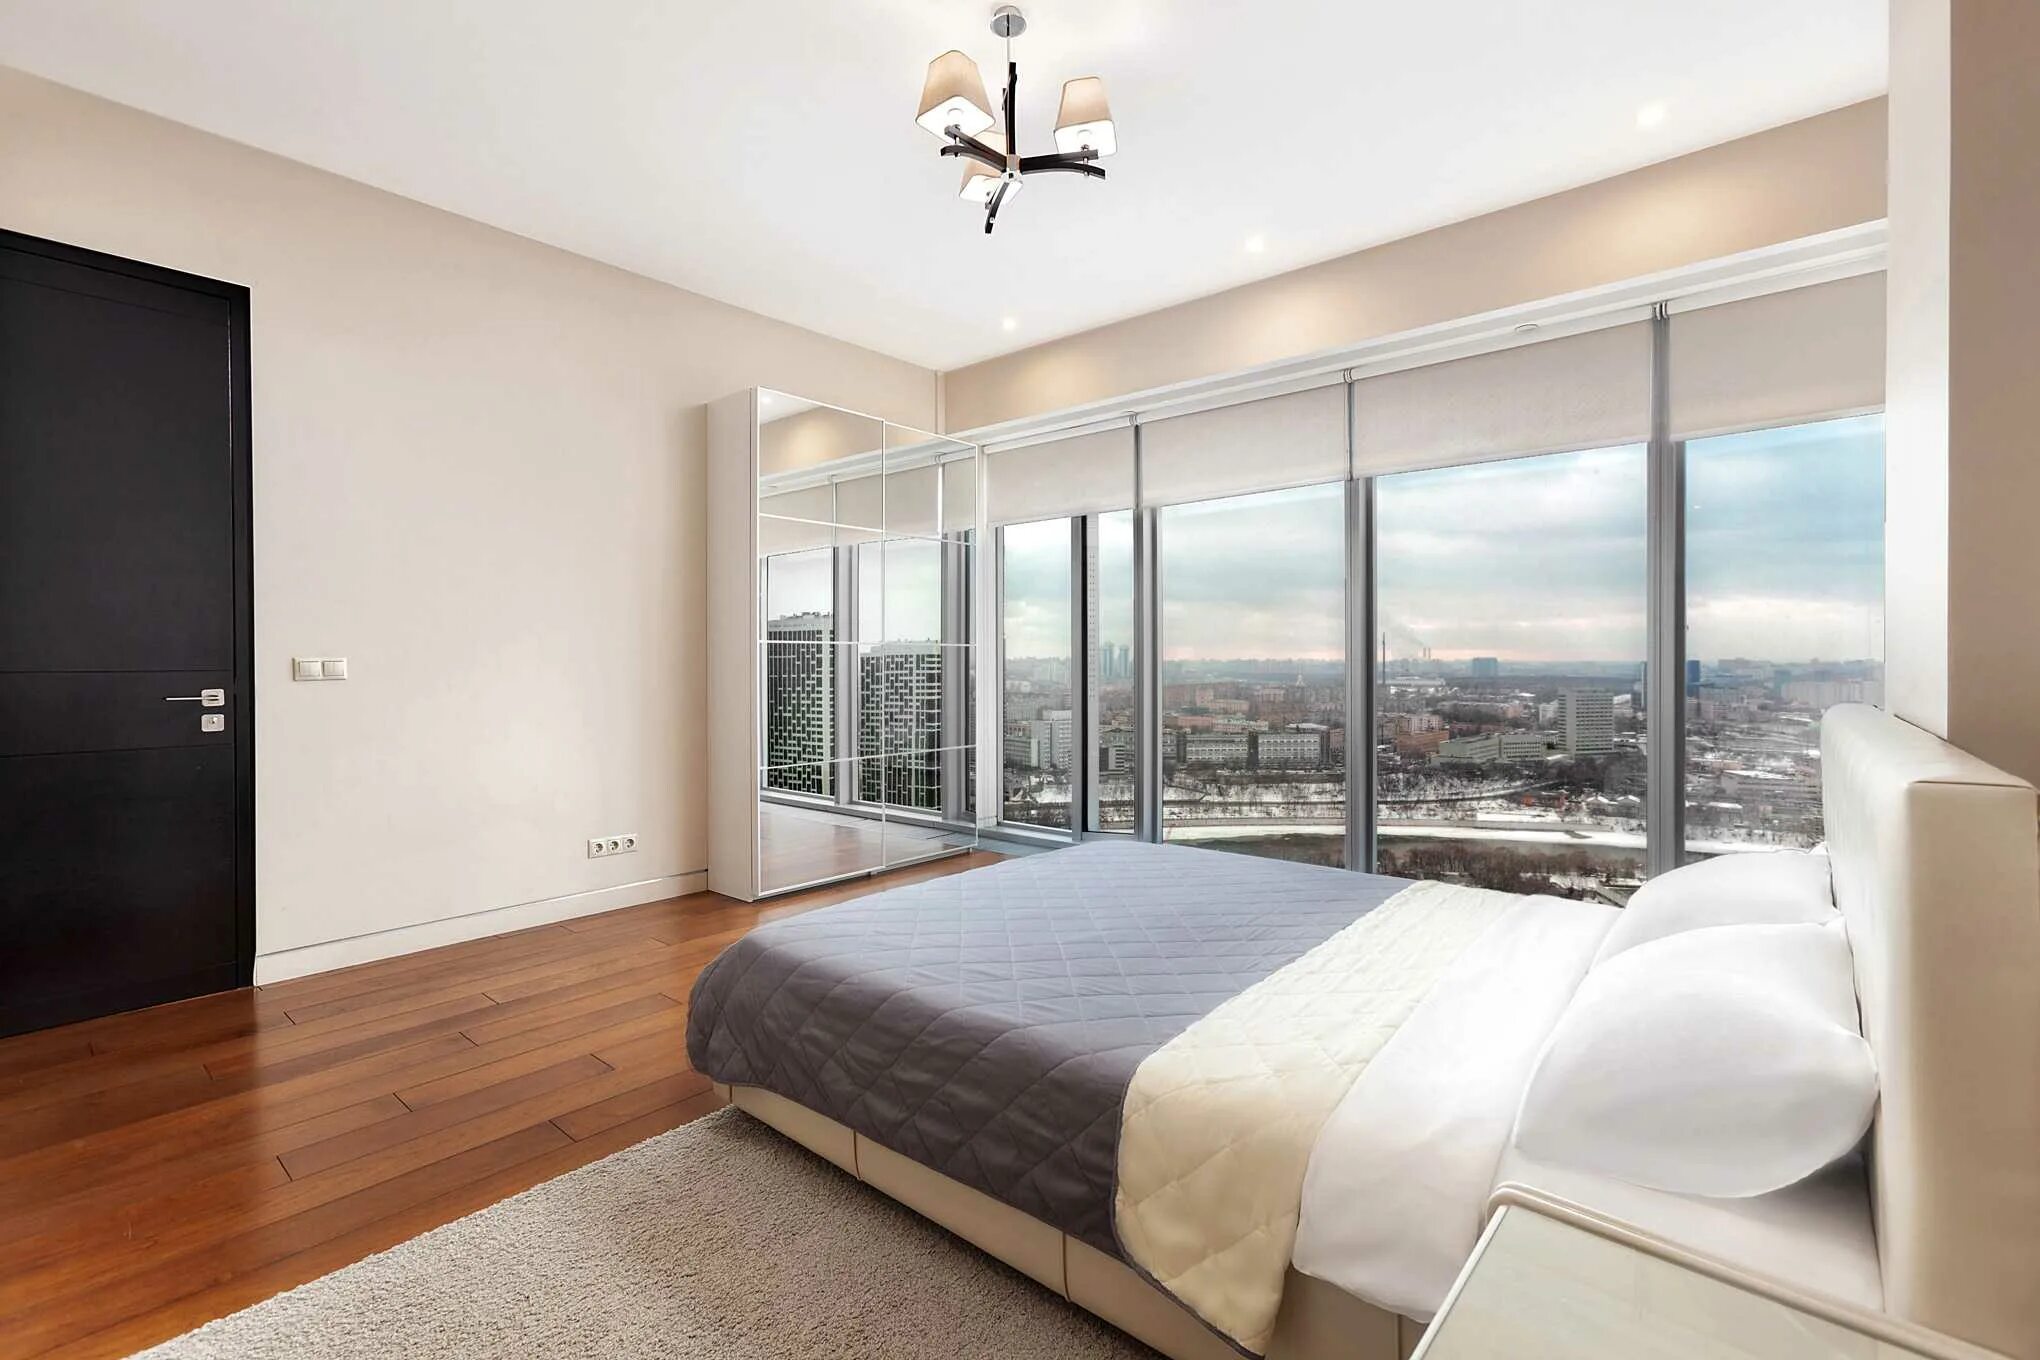 Квартира куплена в 2019 году. Апартаменты Москоу Сити. Москоу Сити апартаменты апартаменты. Спальня в Москоу Сити панорамные окна. Спальня с панорамными окнами.